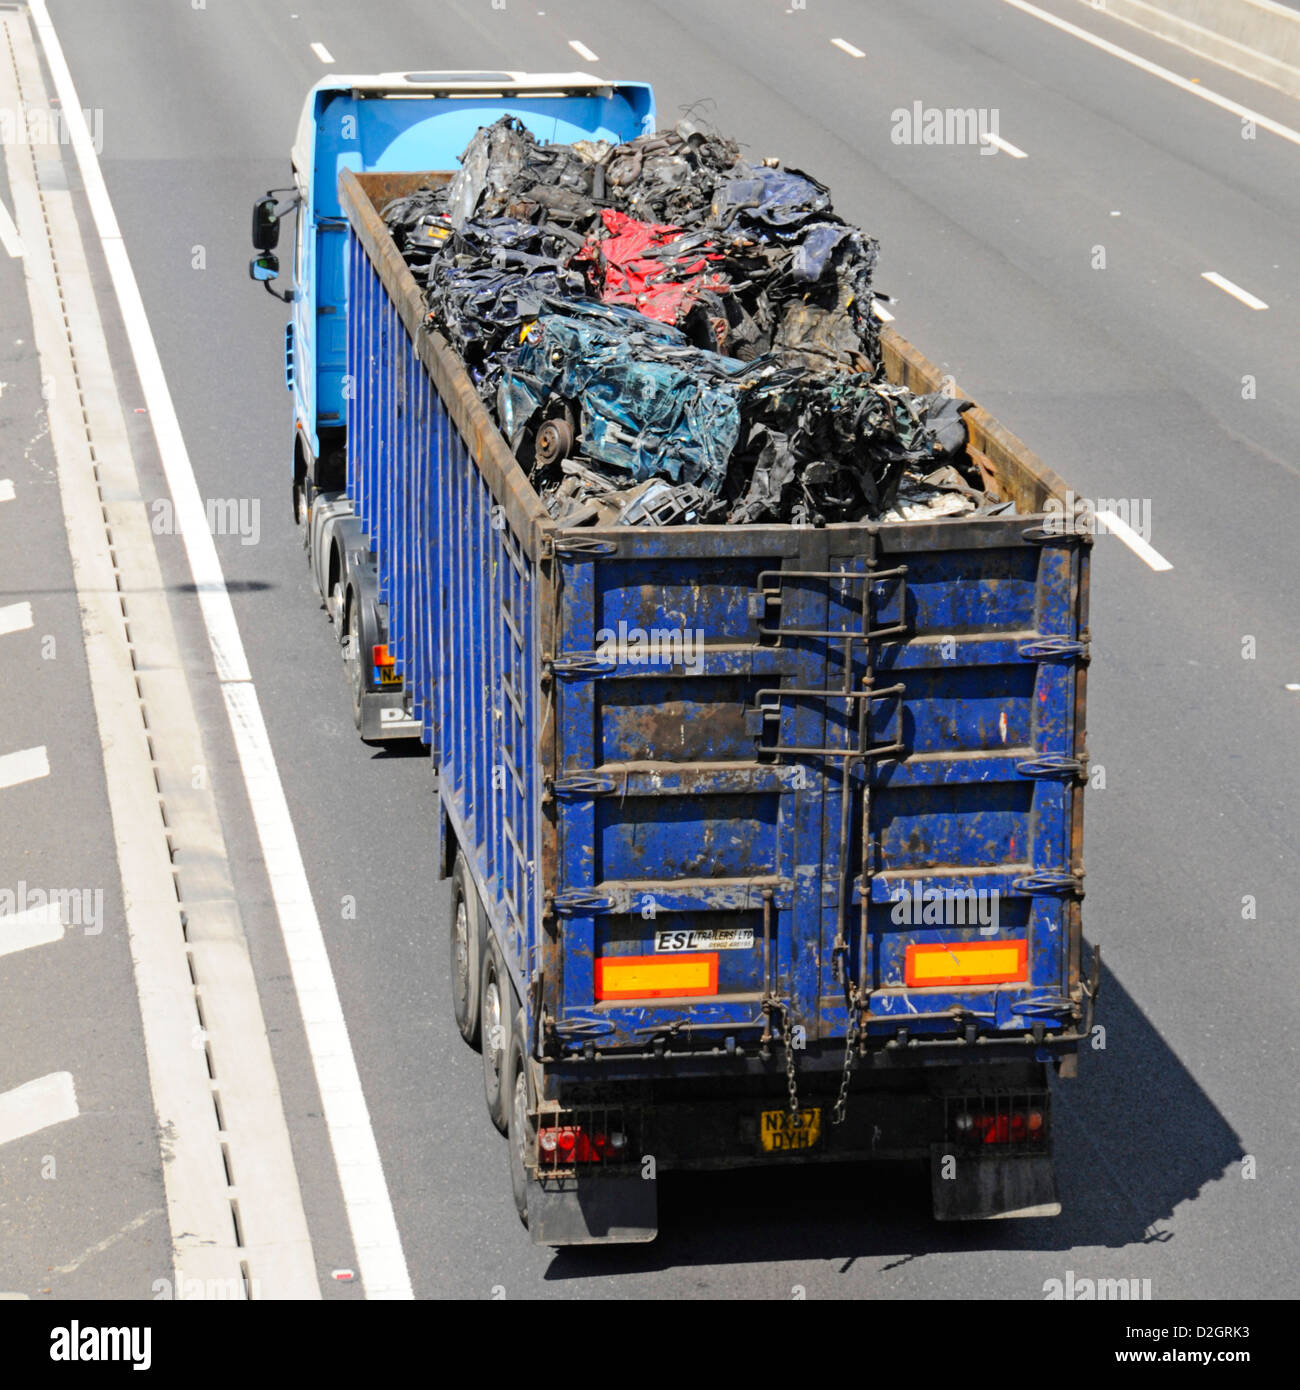 Vue en hauteur sur camion hgv, chargement de voitures à moteur broyées en ferraille dans une remorque articulée ouverte pour recyclage sur autoroute britannique Banque D'Images